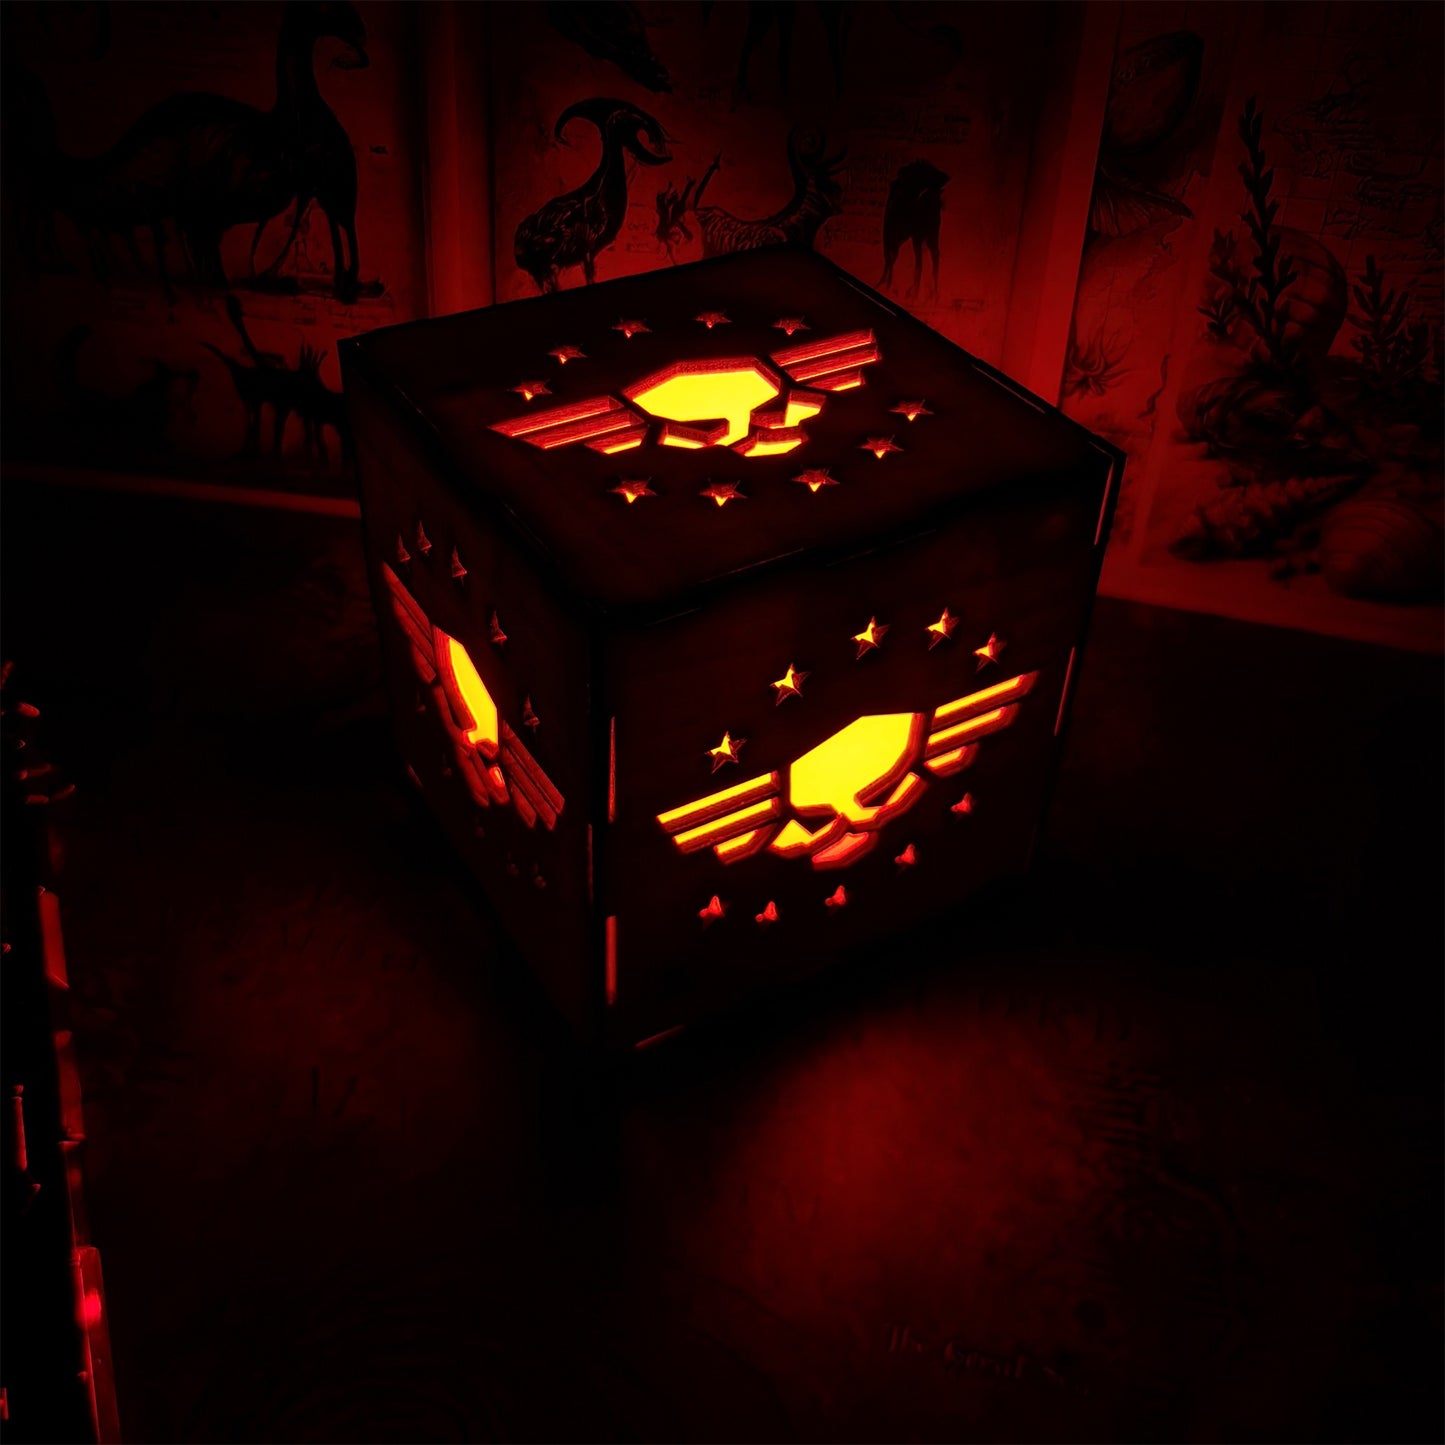 WH4K Winged Skull Badge Wood Cube Light Desk Decor